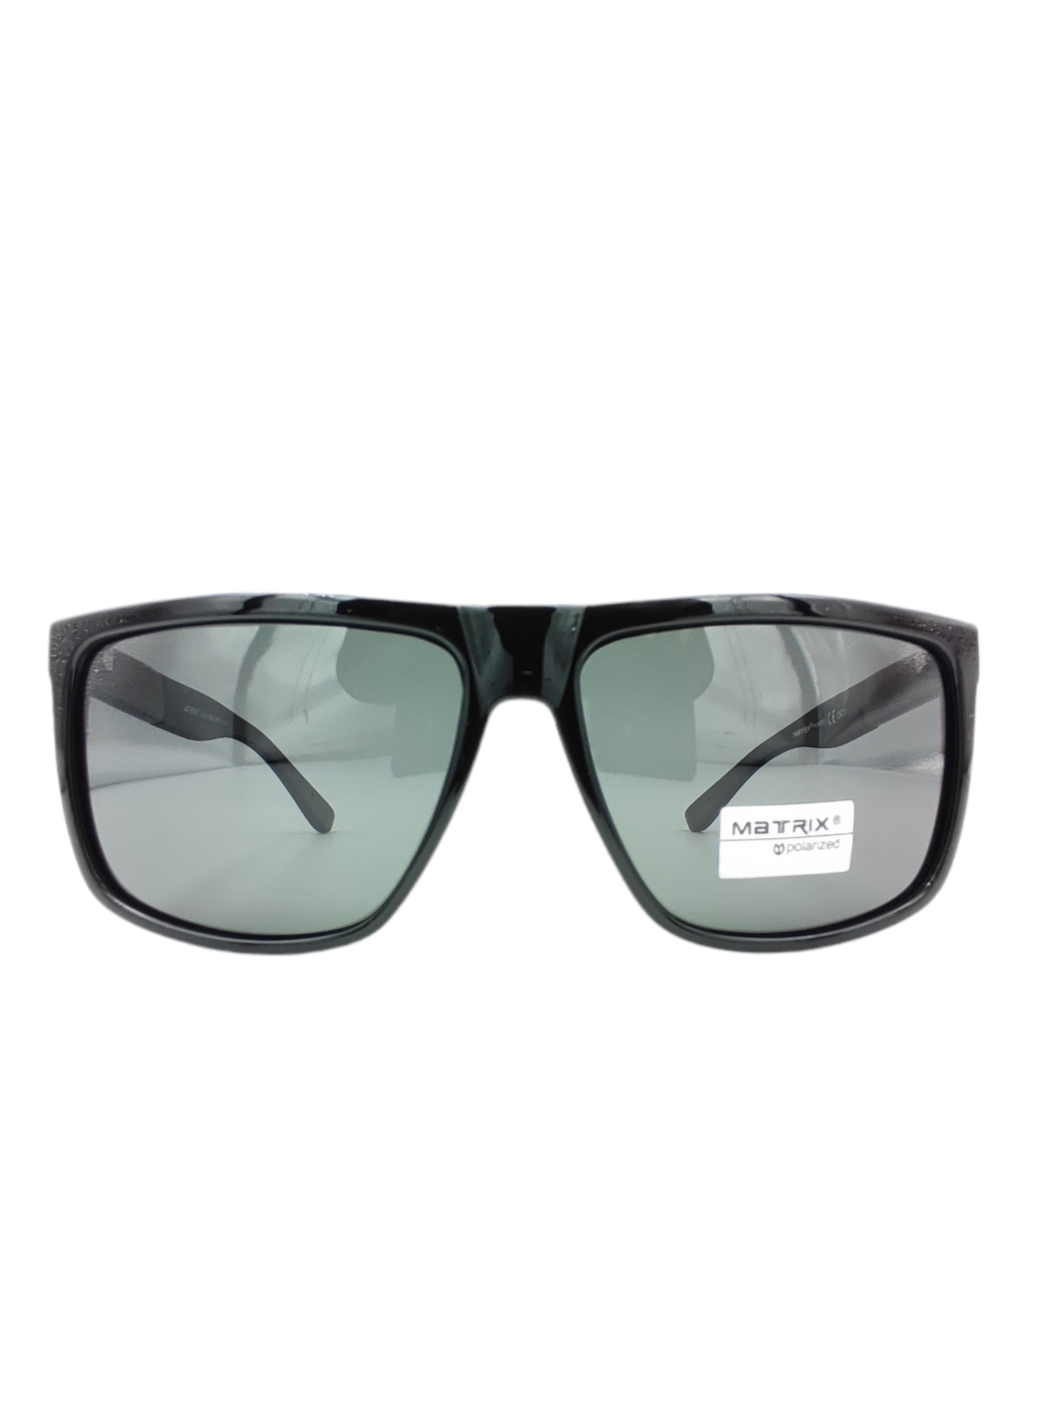 Солнцезащитные очки унисекс Matrix Polarized MT567 черные